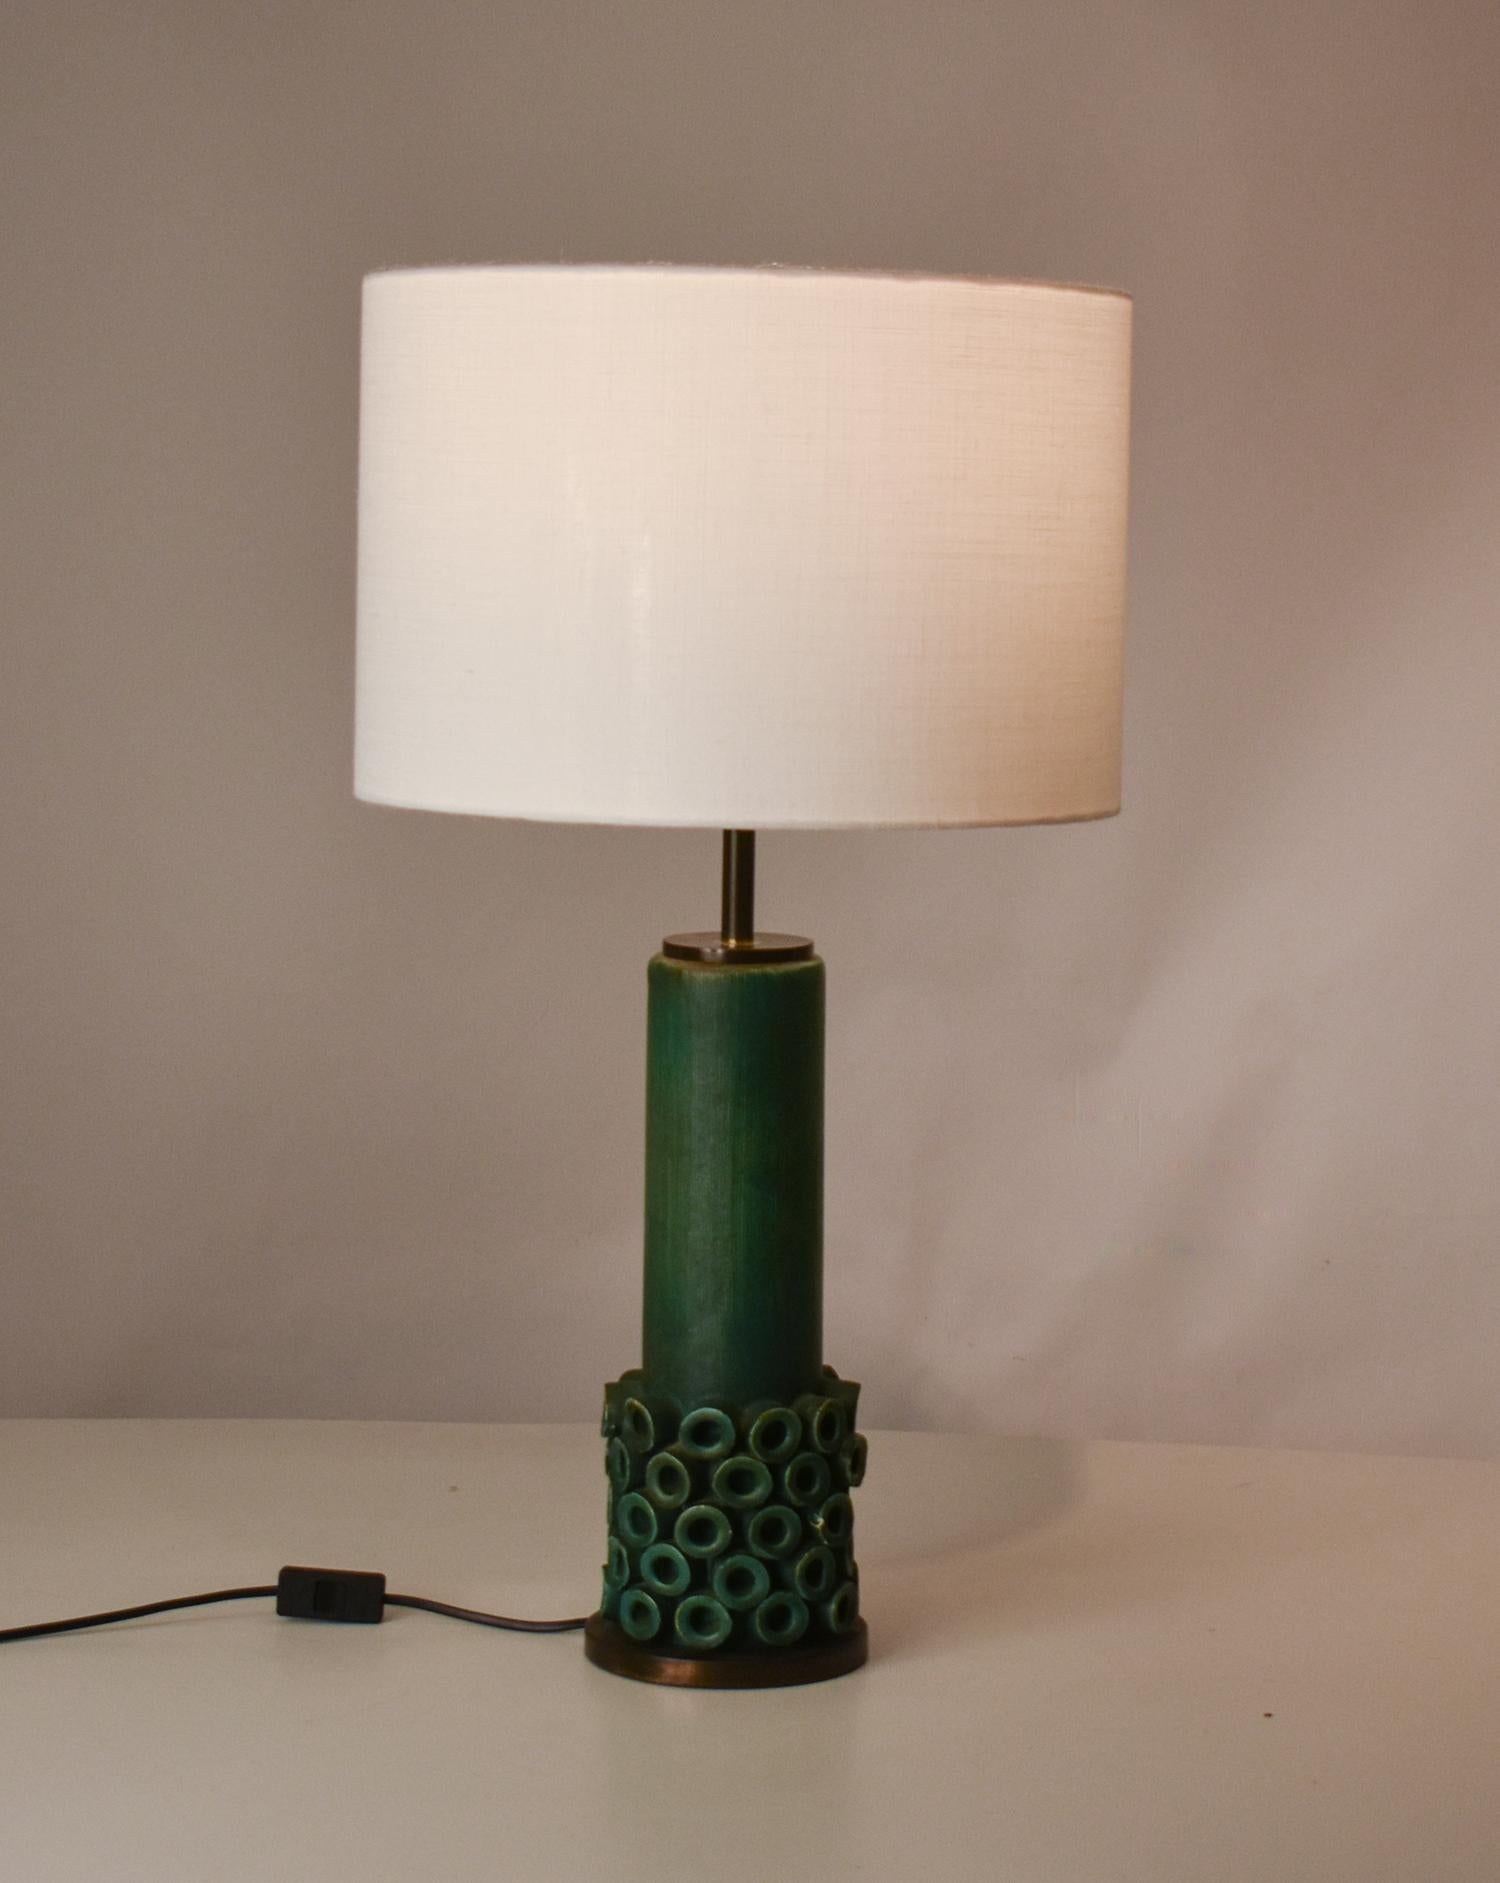 Mid-Century Modern Table lamp in green ceramic and brass. Jordi Vilanova, Jordi Aguade. 1970's